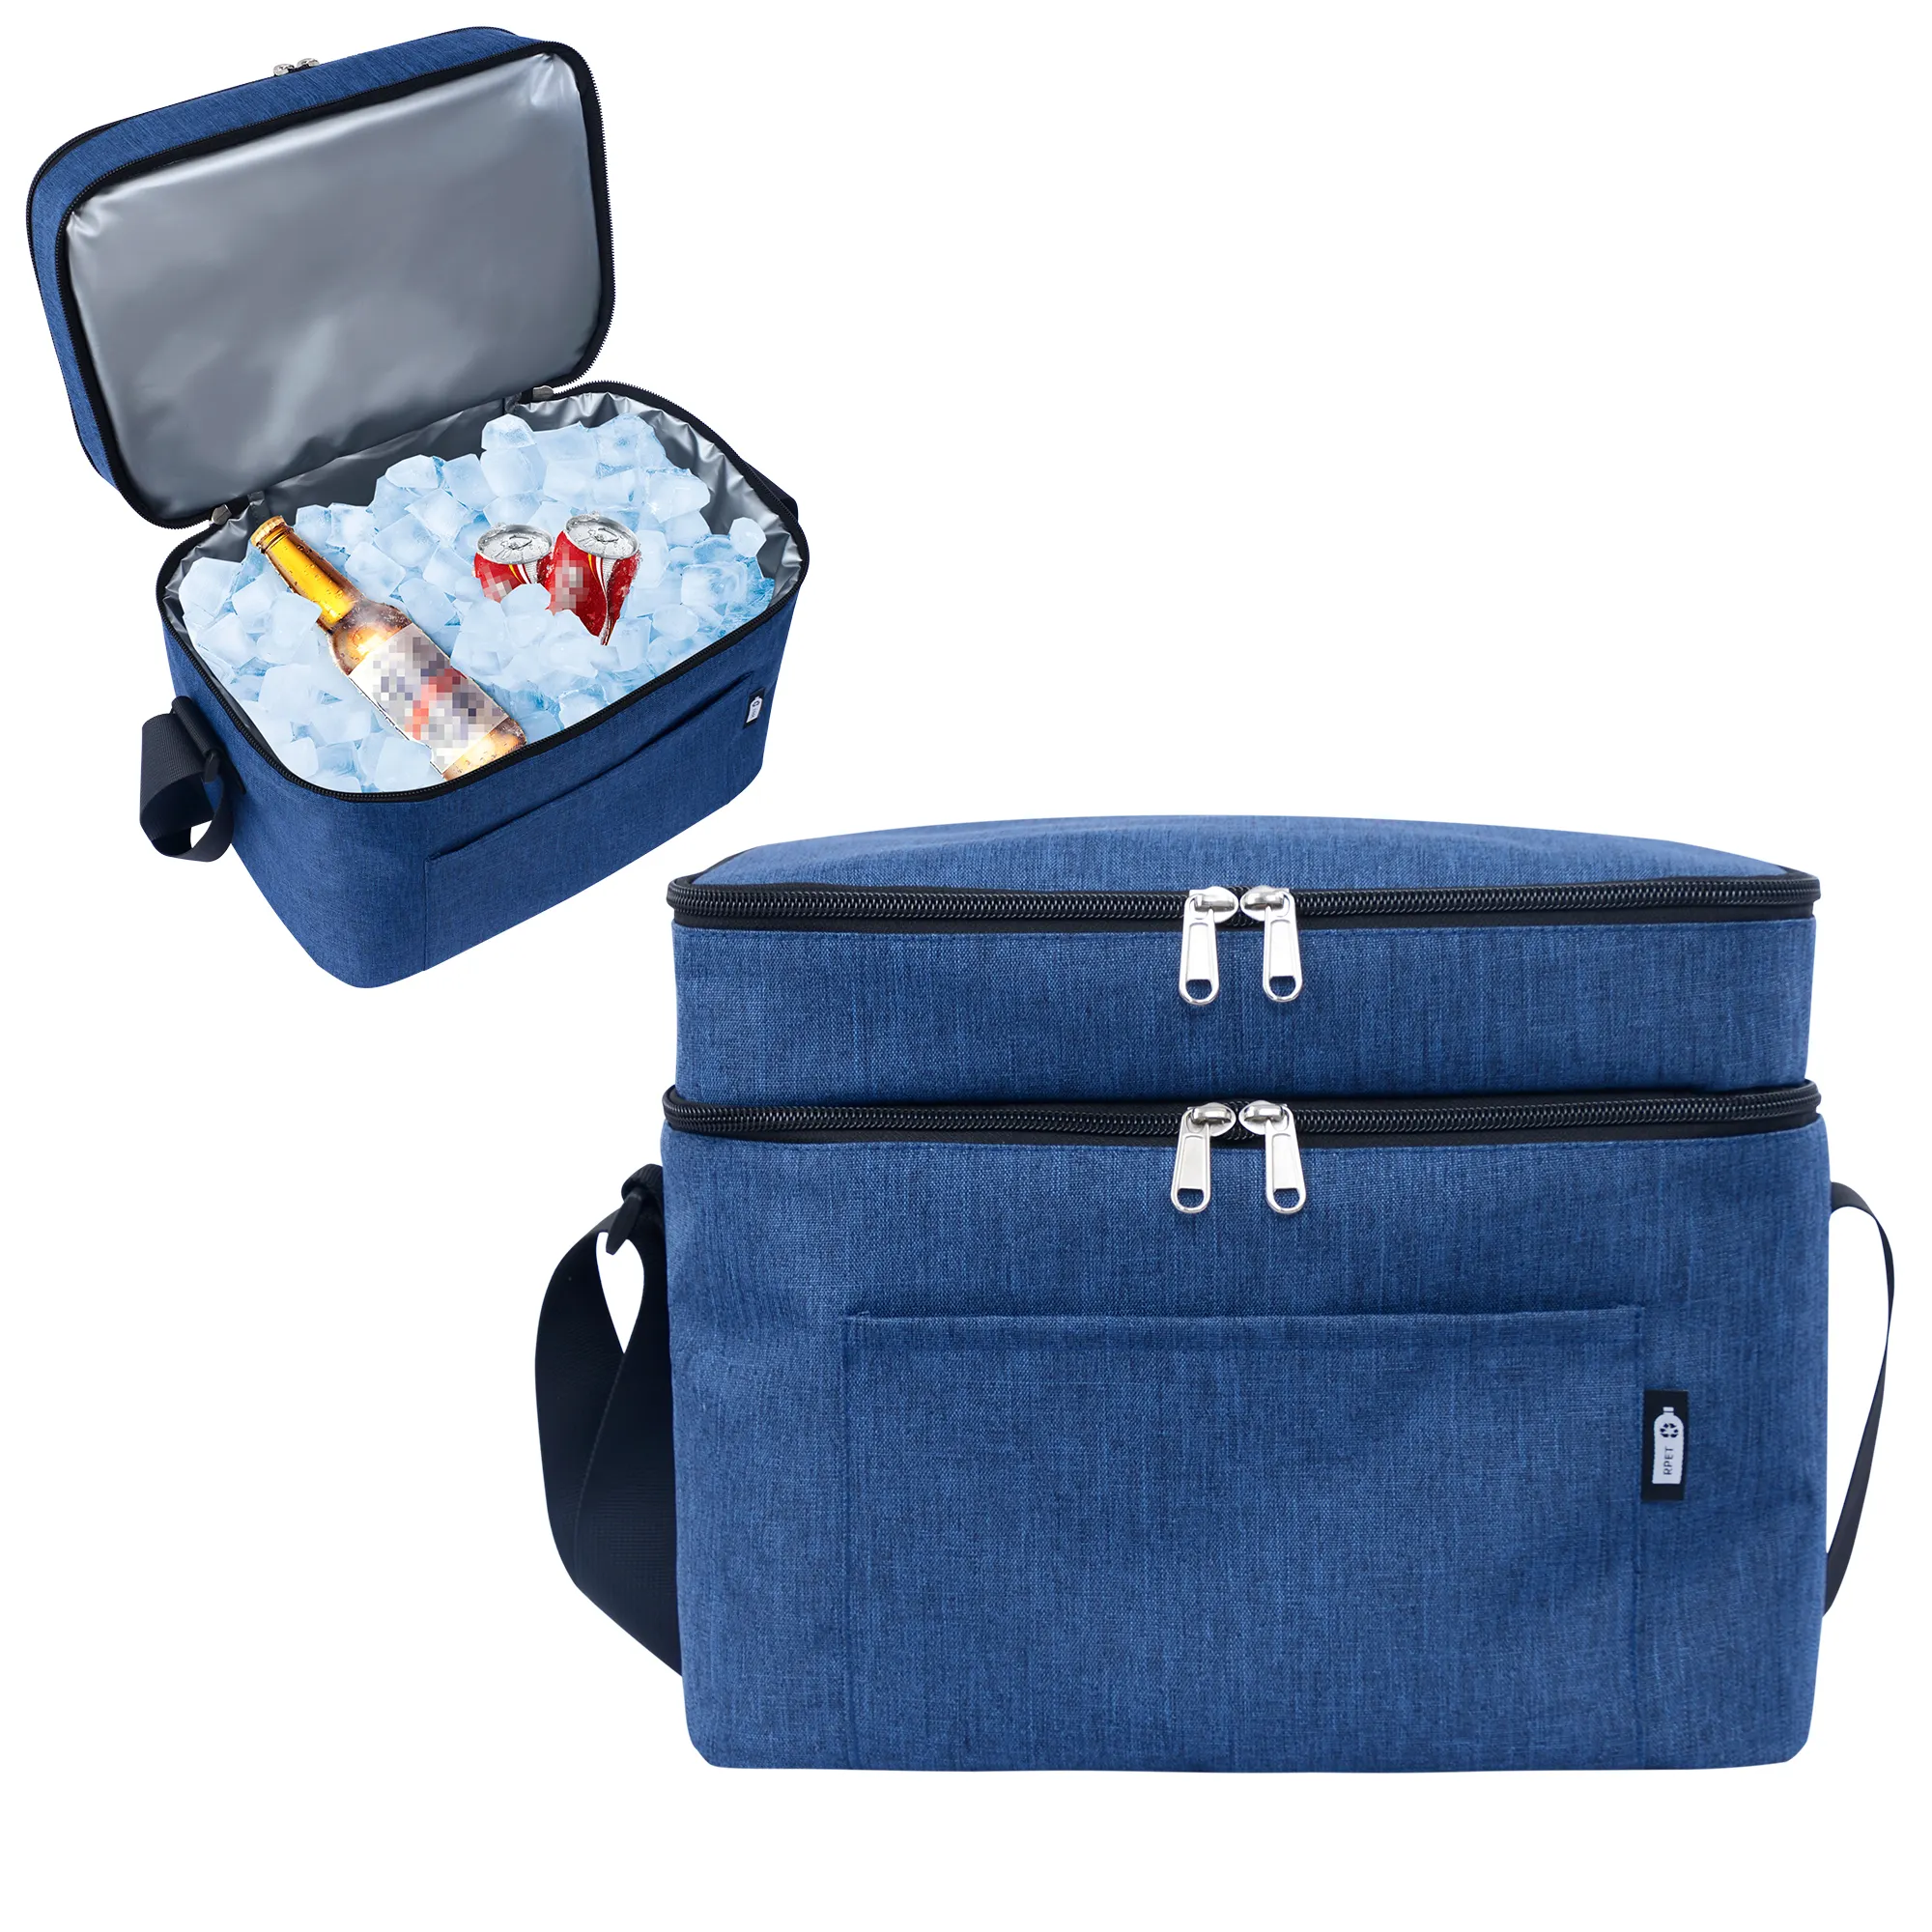 حقيبة الغداء المحمولة ذات الجودة العالية مخصصة بطبقة مزدوجة ومعزولة حراريًا ومضادة للتسرب أثناء النزهات حقيبة تخفيف الوزن أدوات ضرورية للتبريد